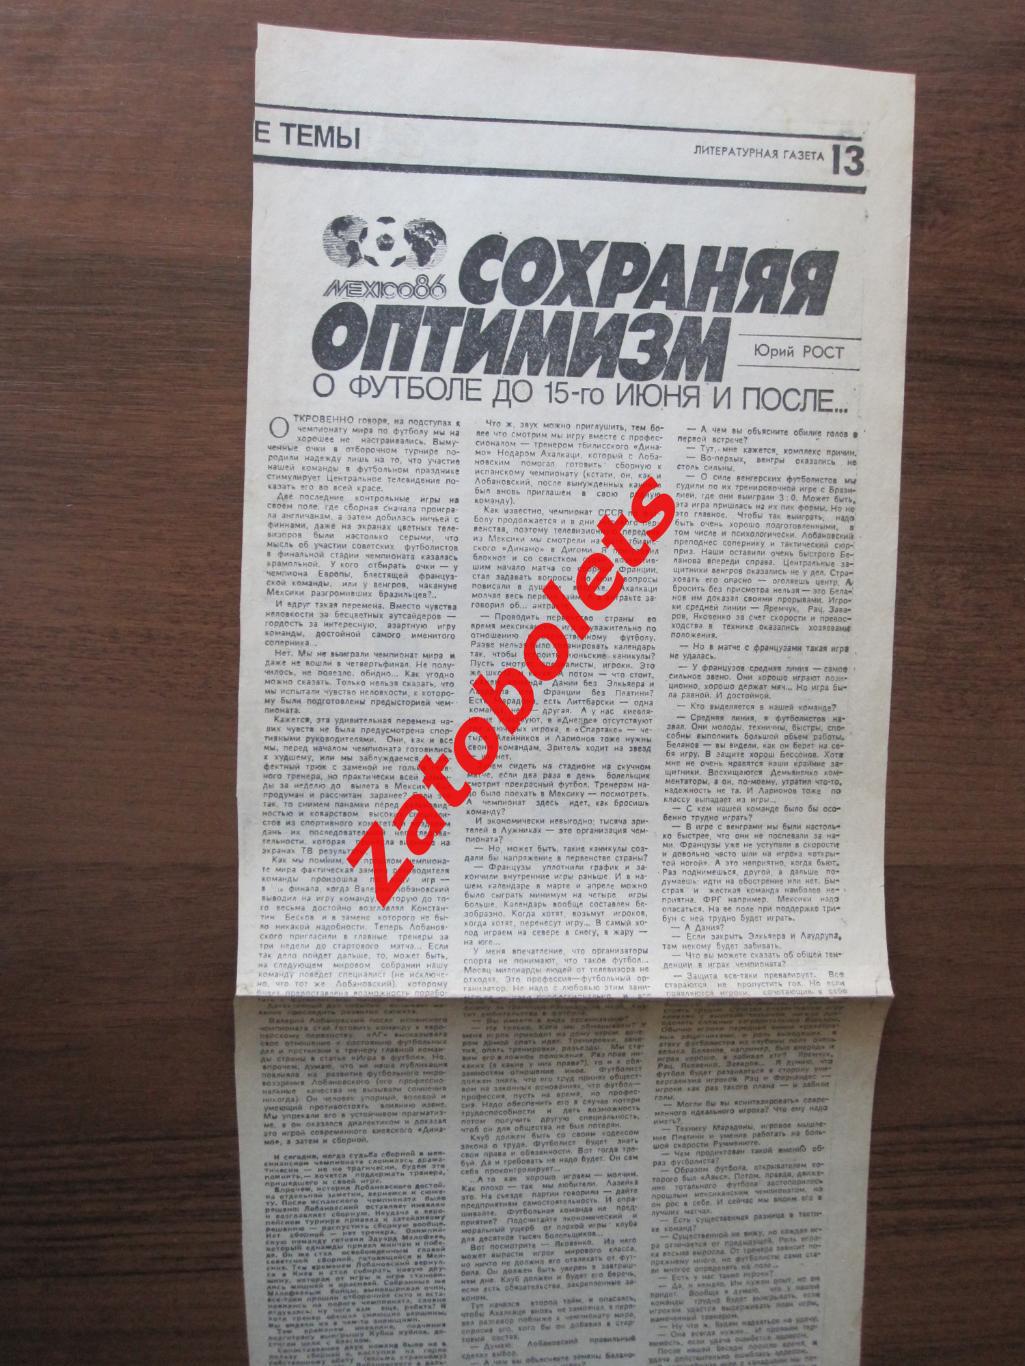 Чемпионат Мира 1986 Юрий Рост - Ахалкаци Литературная газета